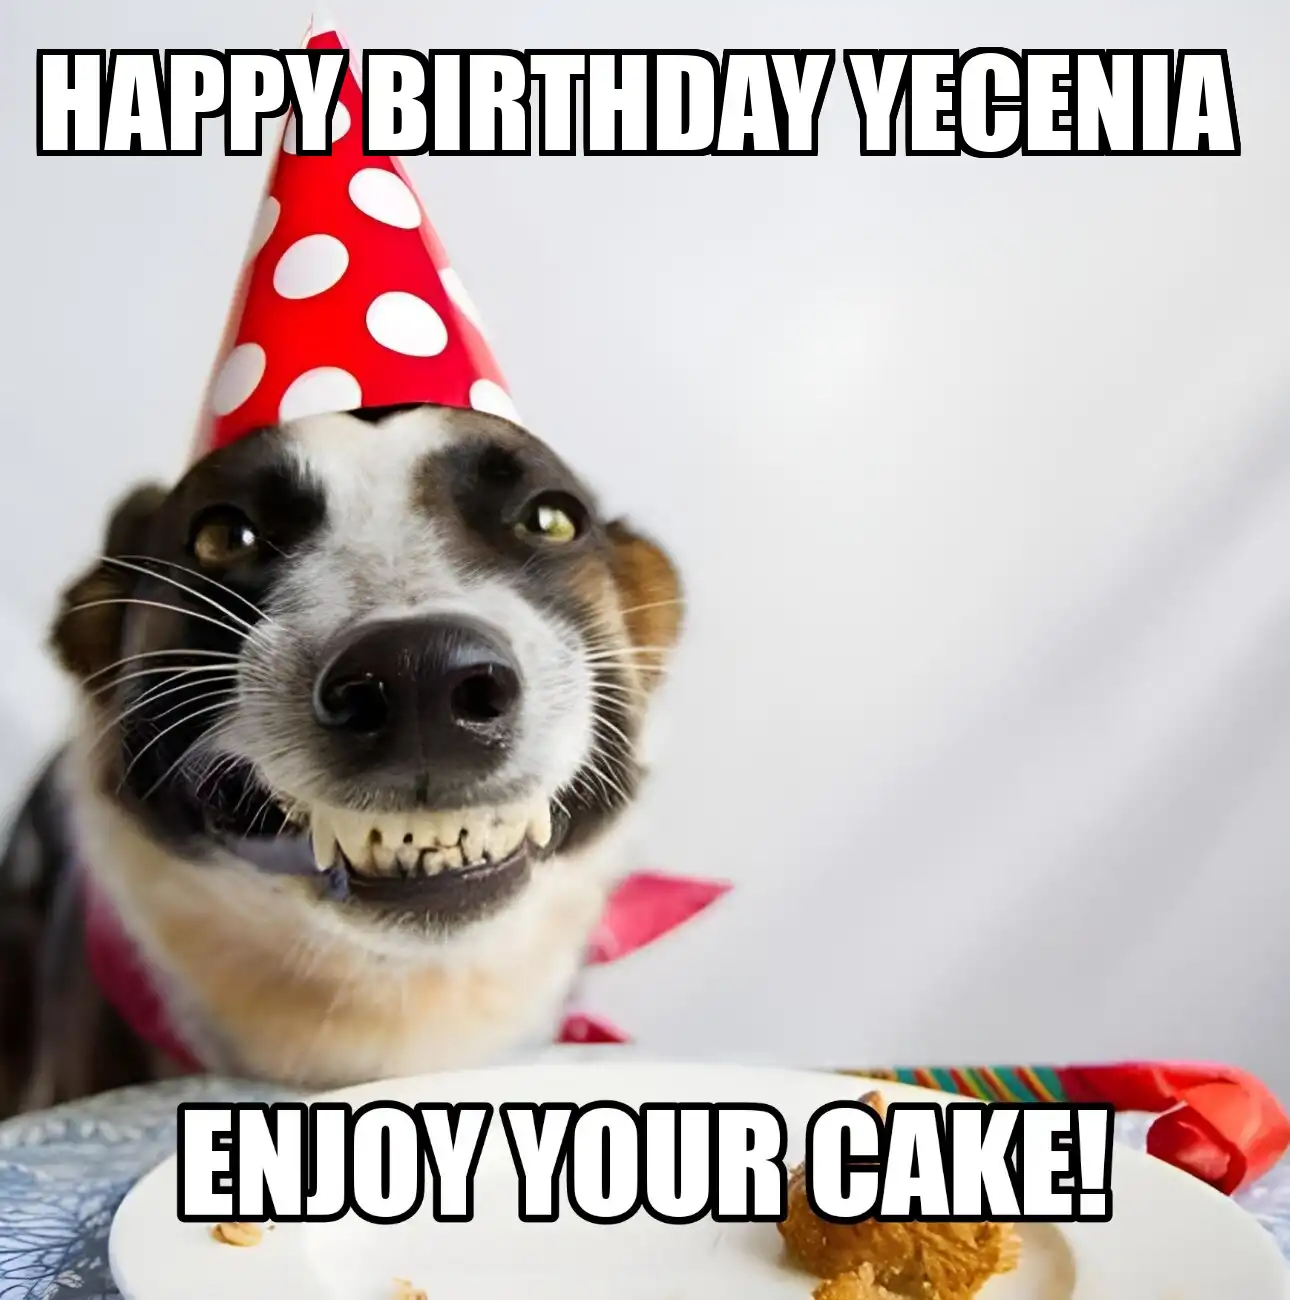 Happy Birthday Yecenia Enjoy Your Cake Dog Meme